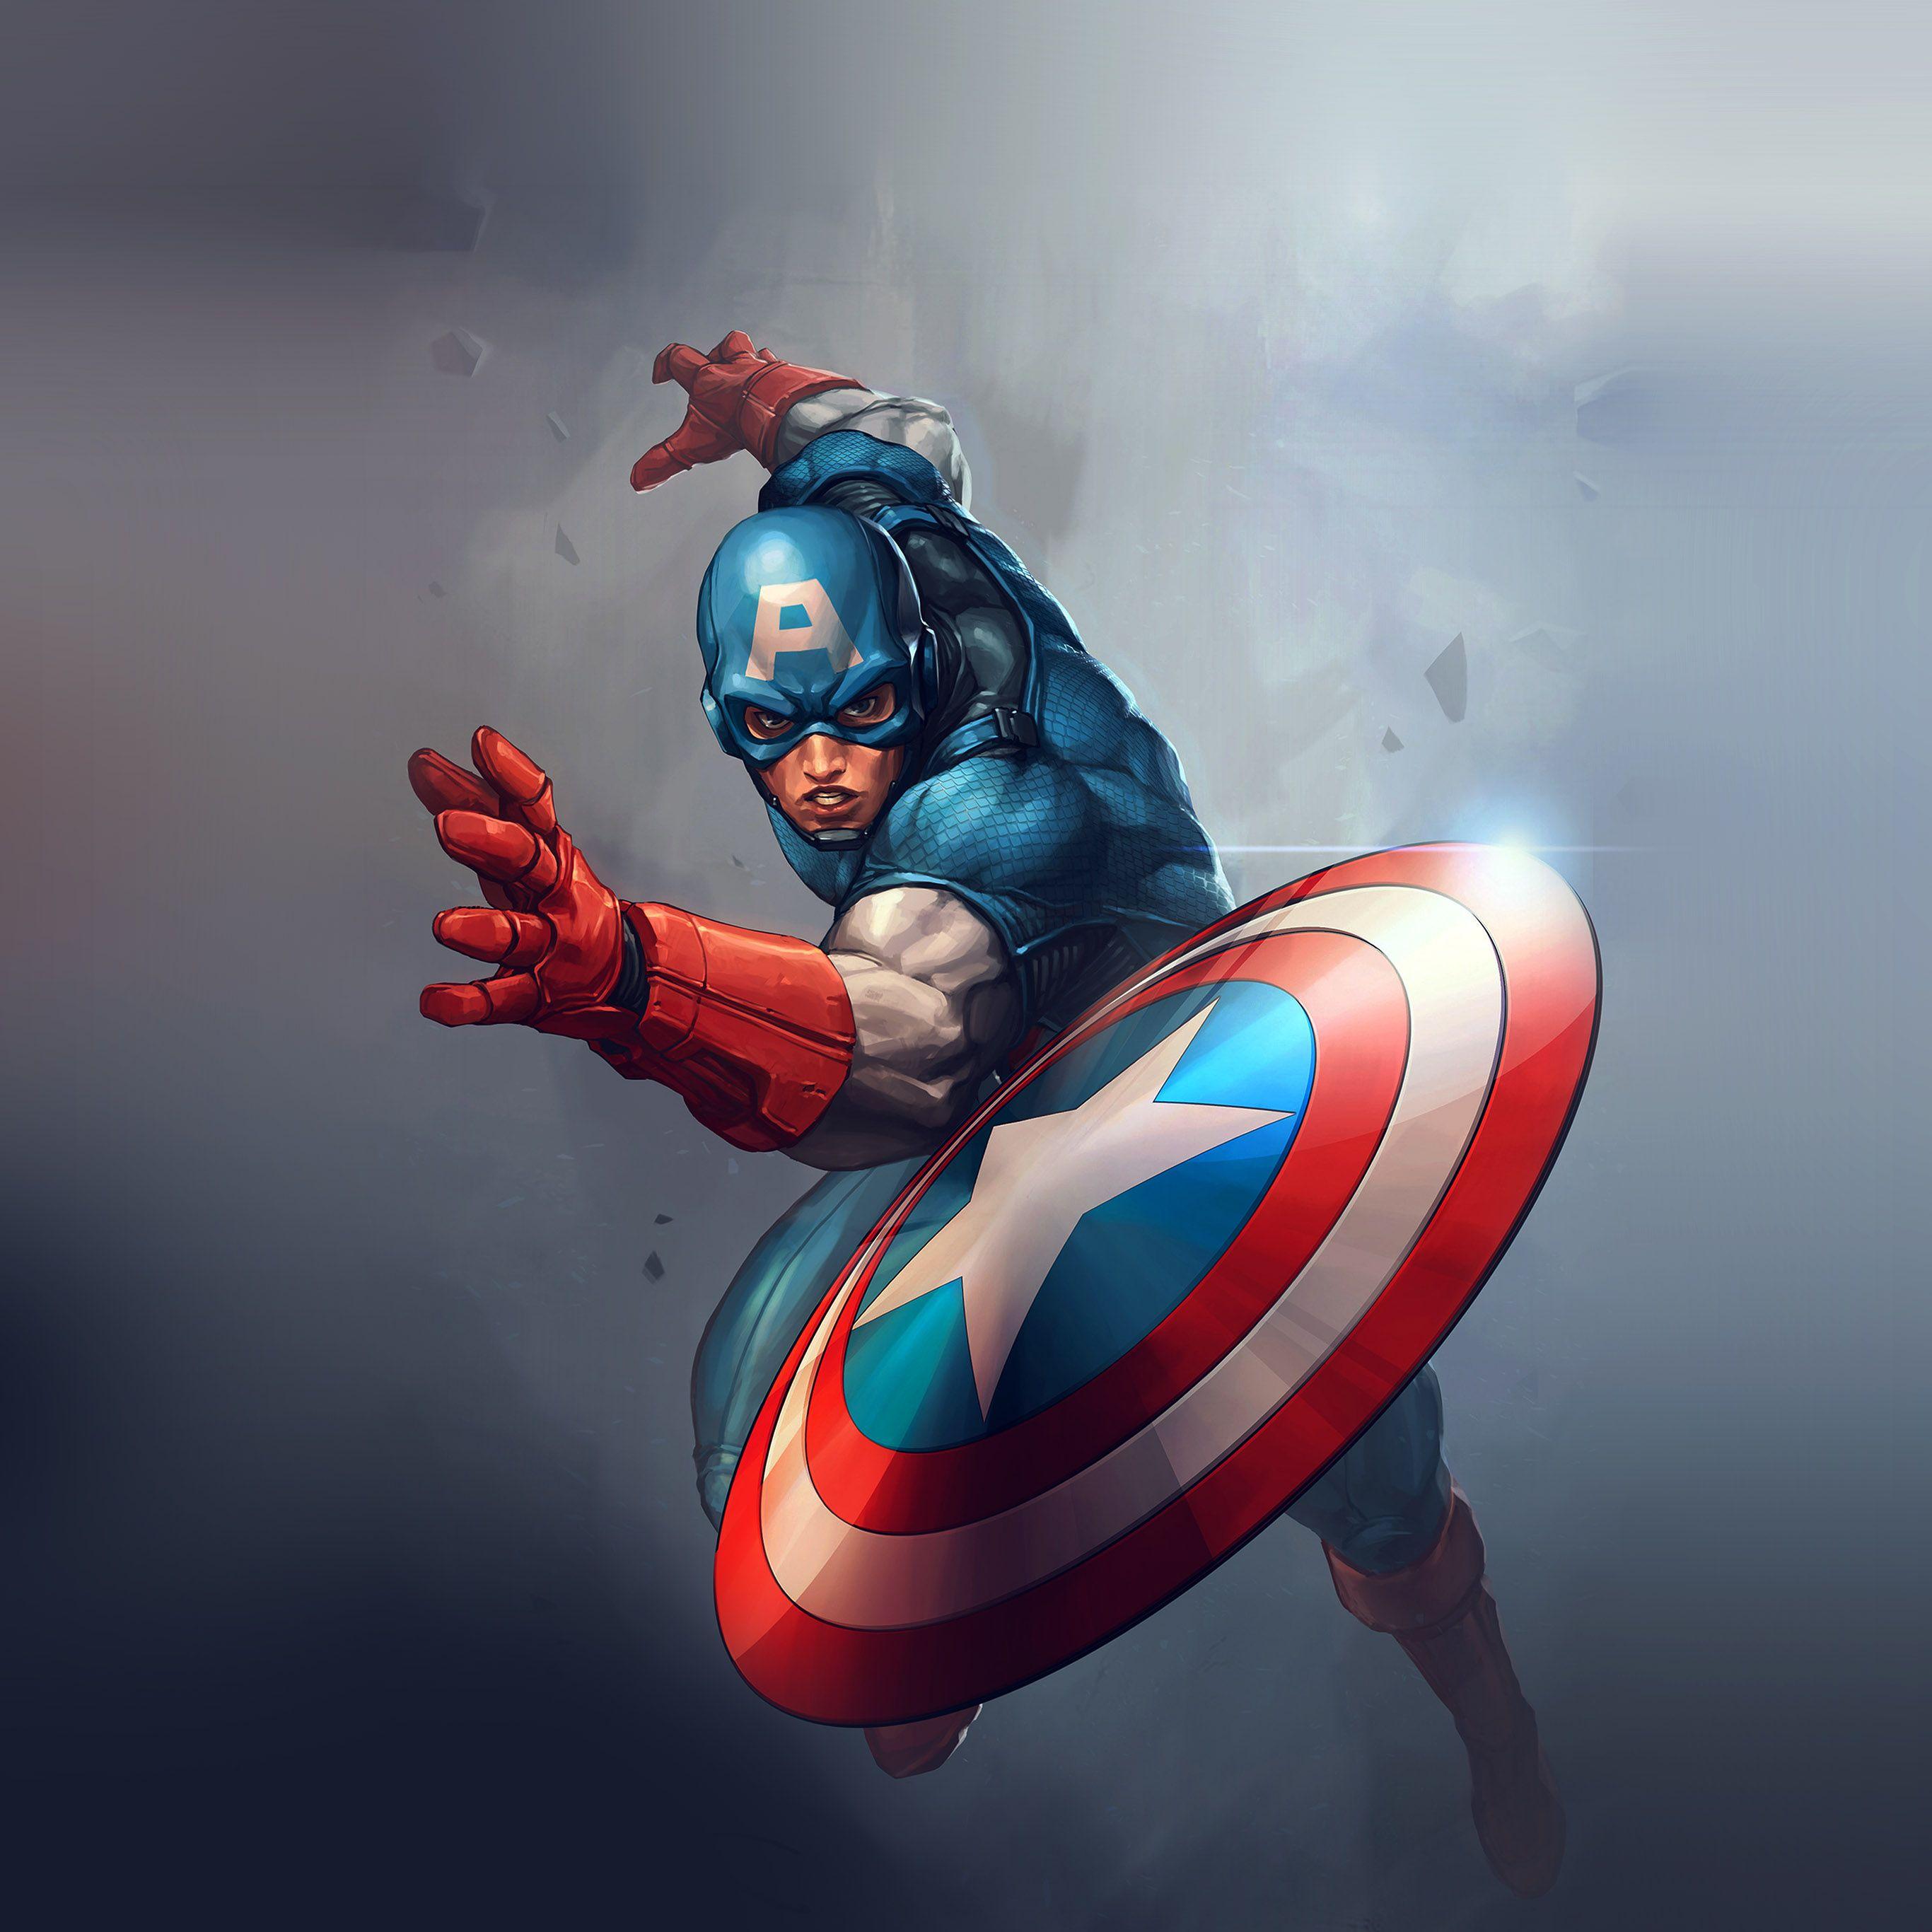 2732x2732 Anh hùng Captain America Jeehyunglee Minh họa nghệ thuật Hình nền